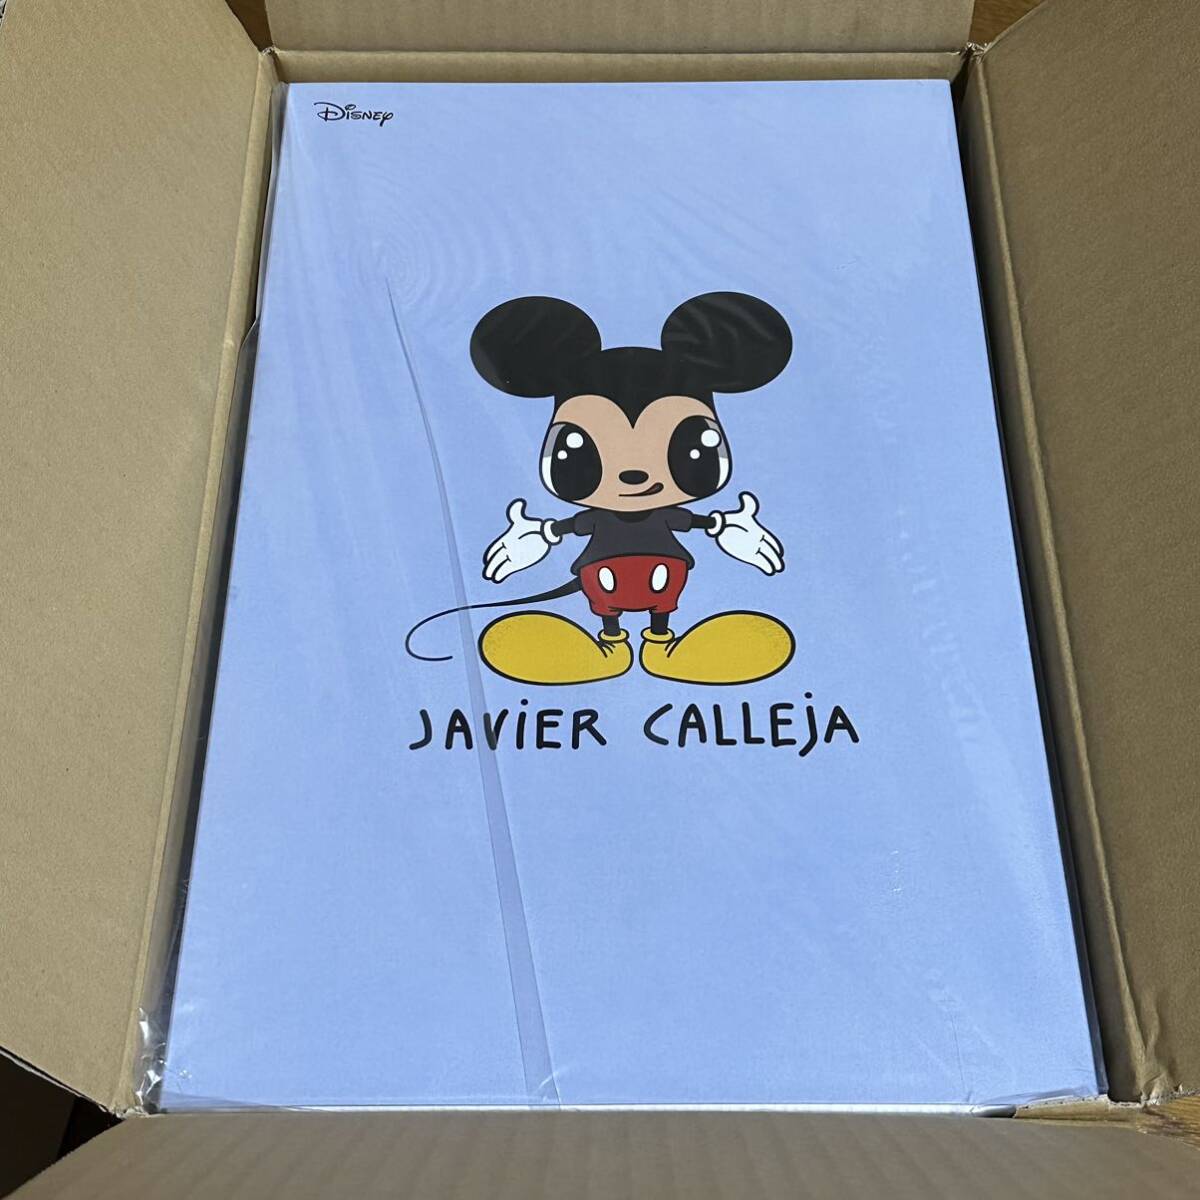 未開封品 Javier Calleja Mickey Mouse Now and Future Edition Sofubi ハビアカジェハ ミッキー マウス ソフビ フィギュアの画像2